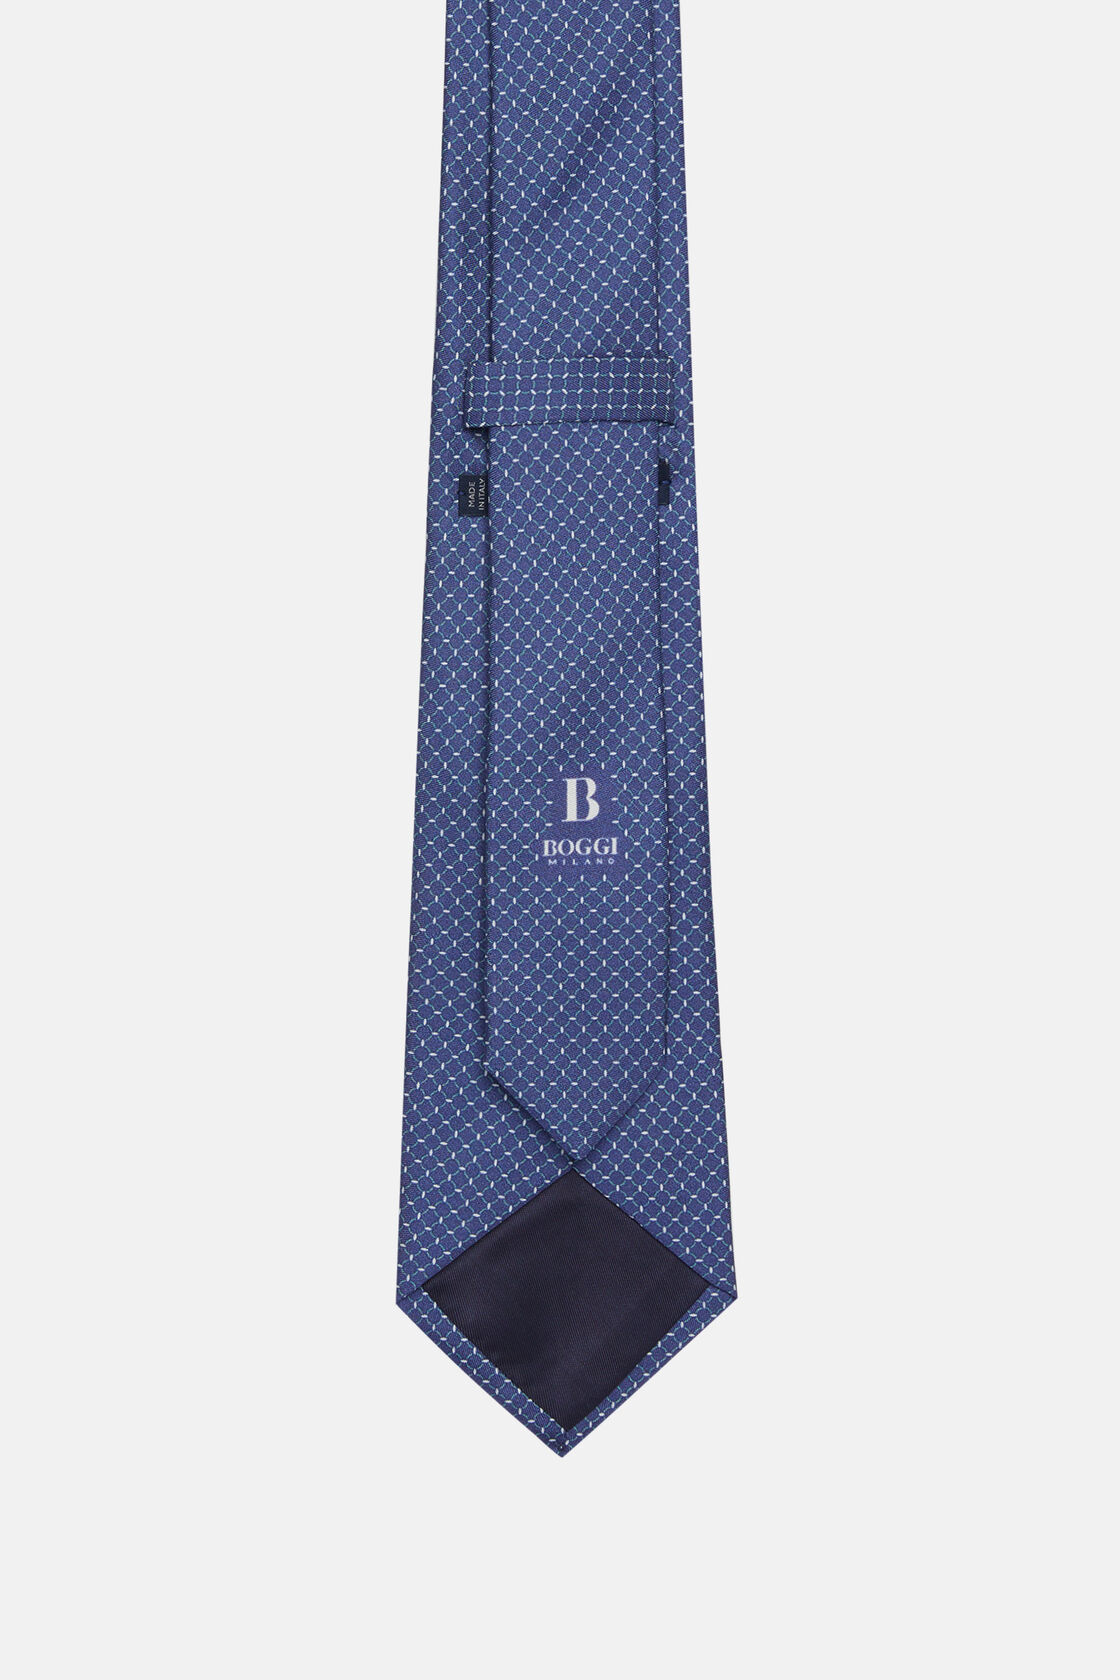 Μεταξωτή γραβάτα με μικρά σχέδια, Navy - Green, hi-res